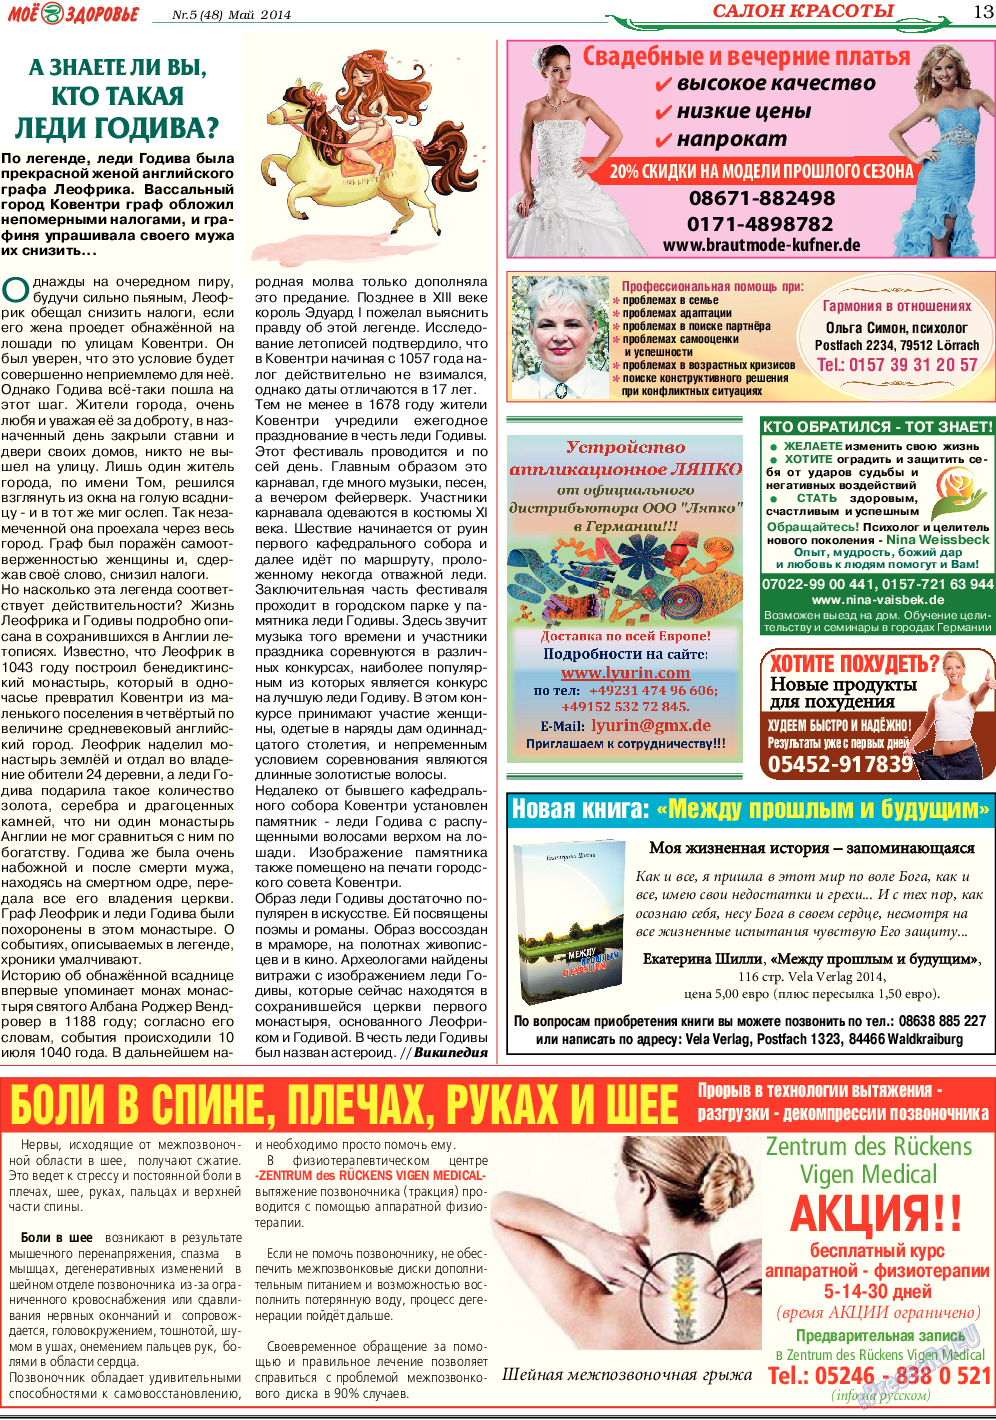 Кругозор, газета. 2014 №5 стр.13